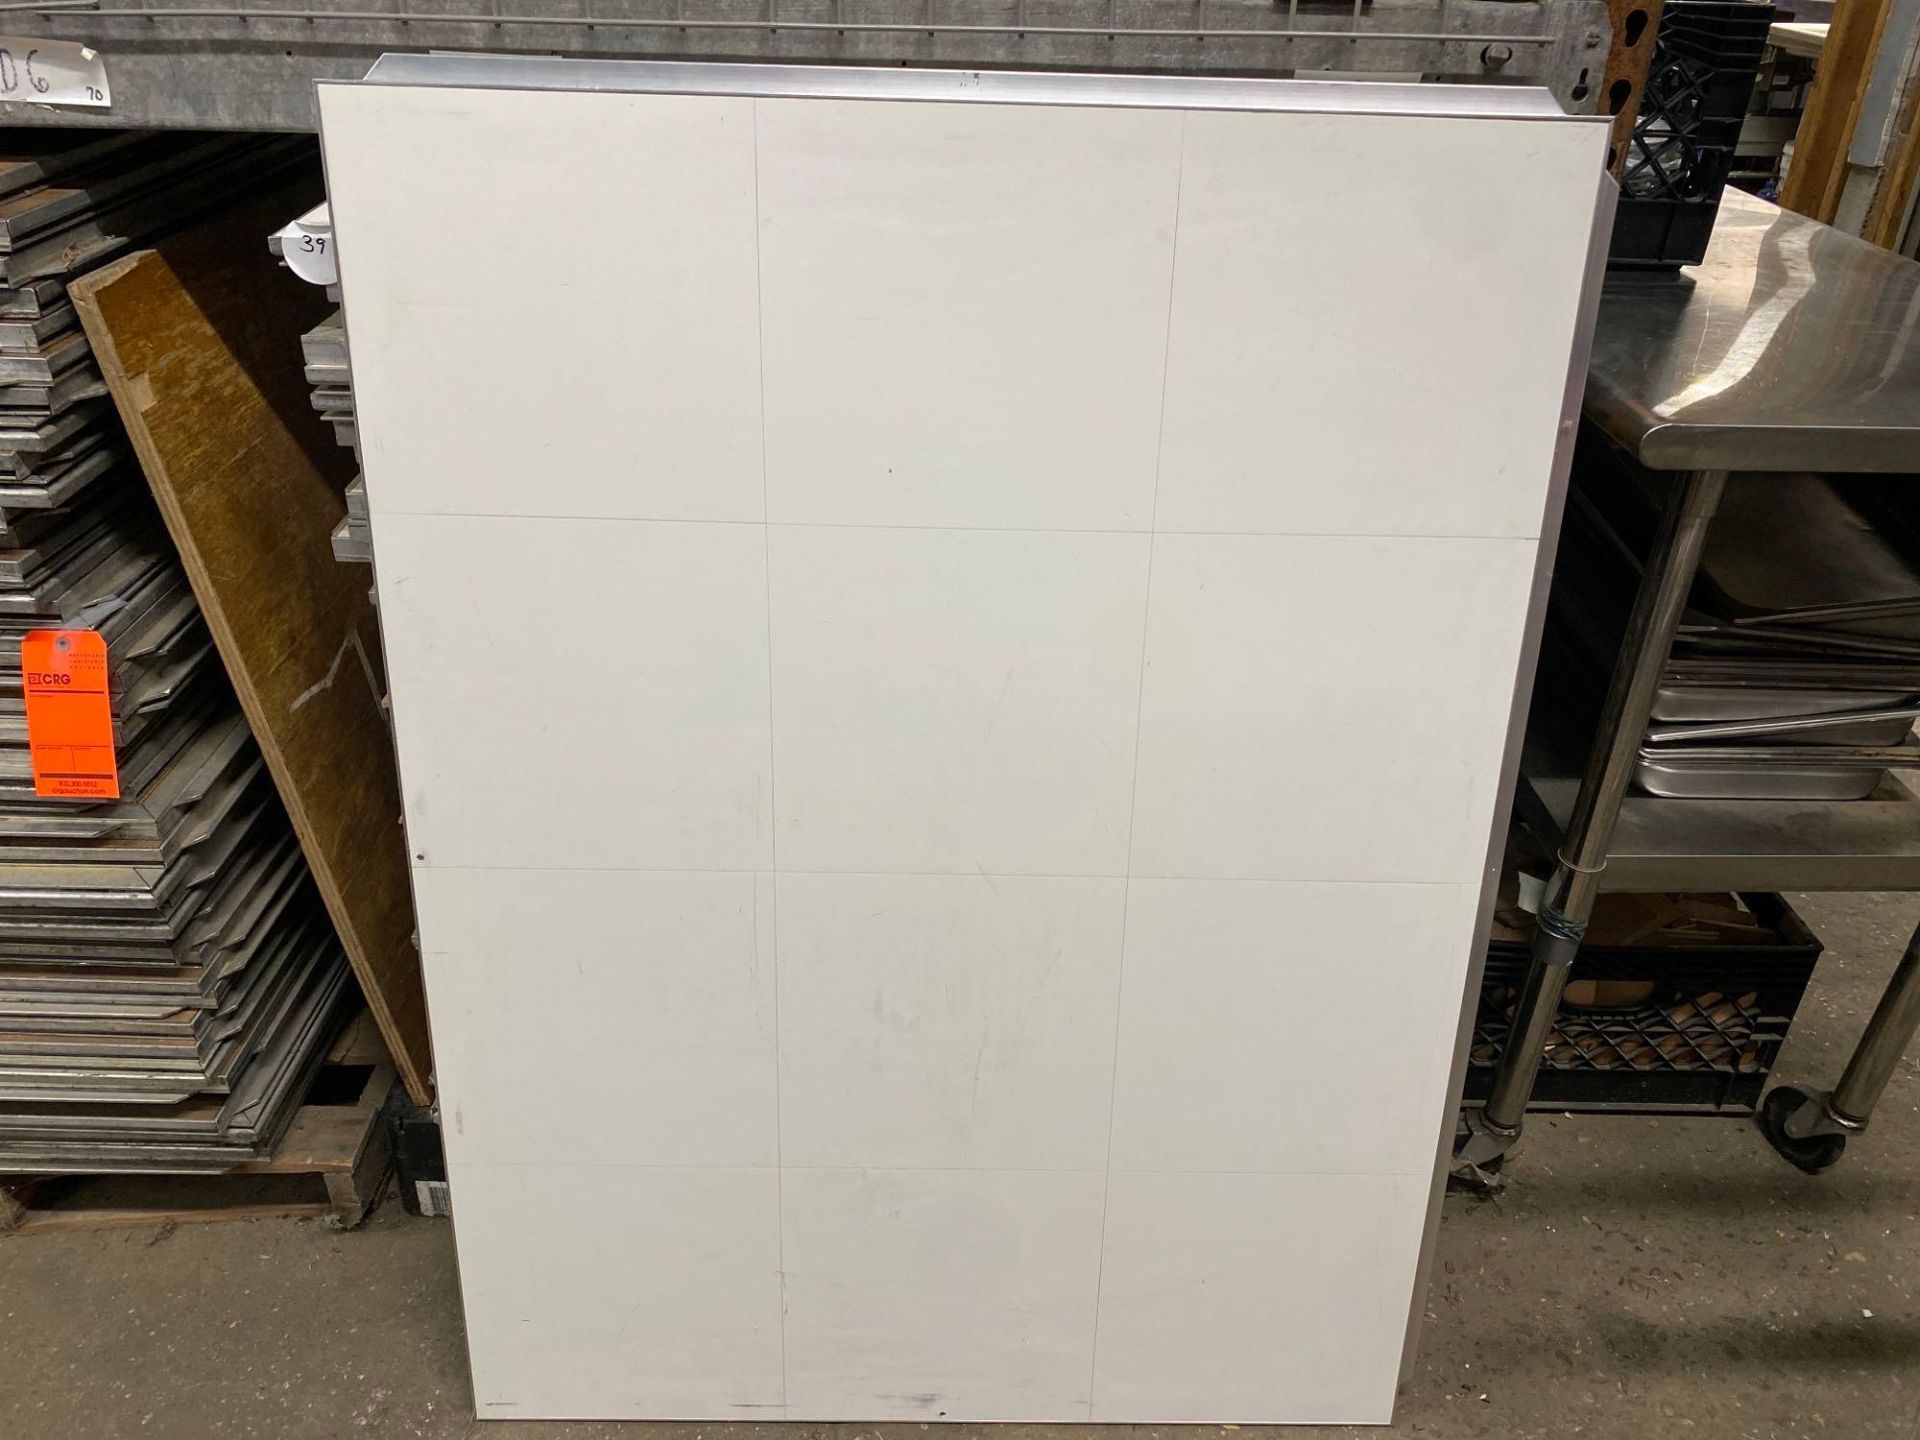 Lot of (39) 3ft x 4ft white vinyl tile Calif portable dance floor sections for 15ft x 28ft total